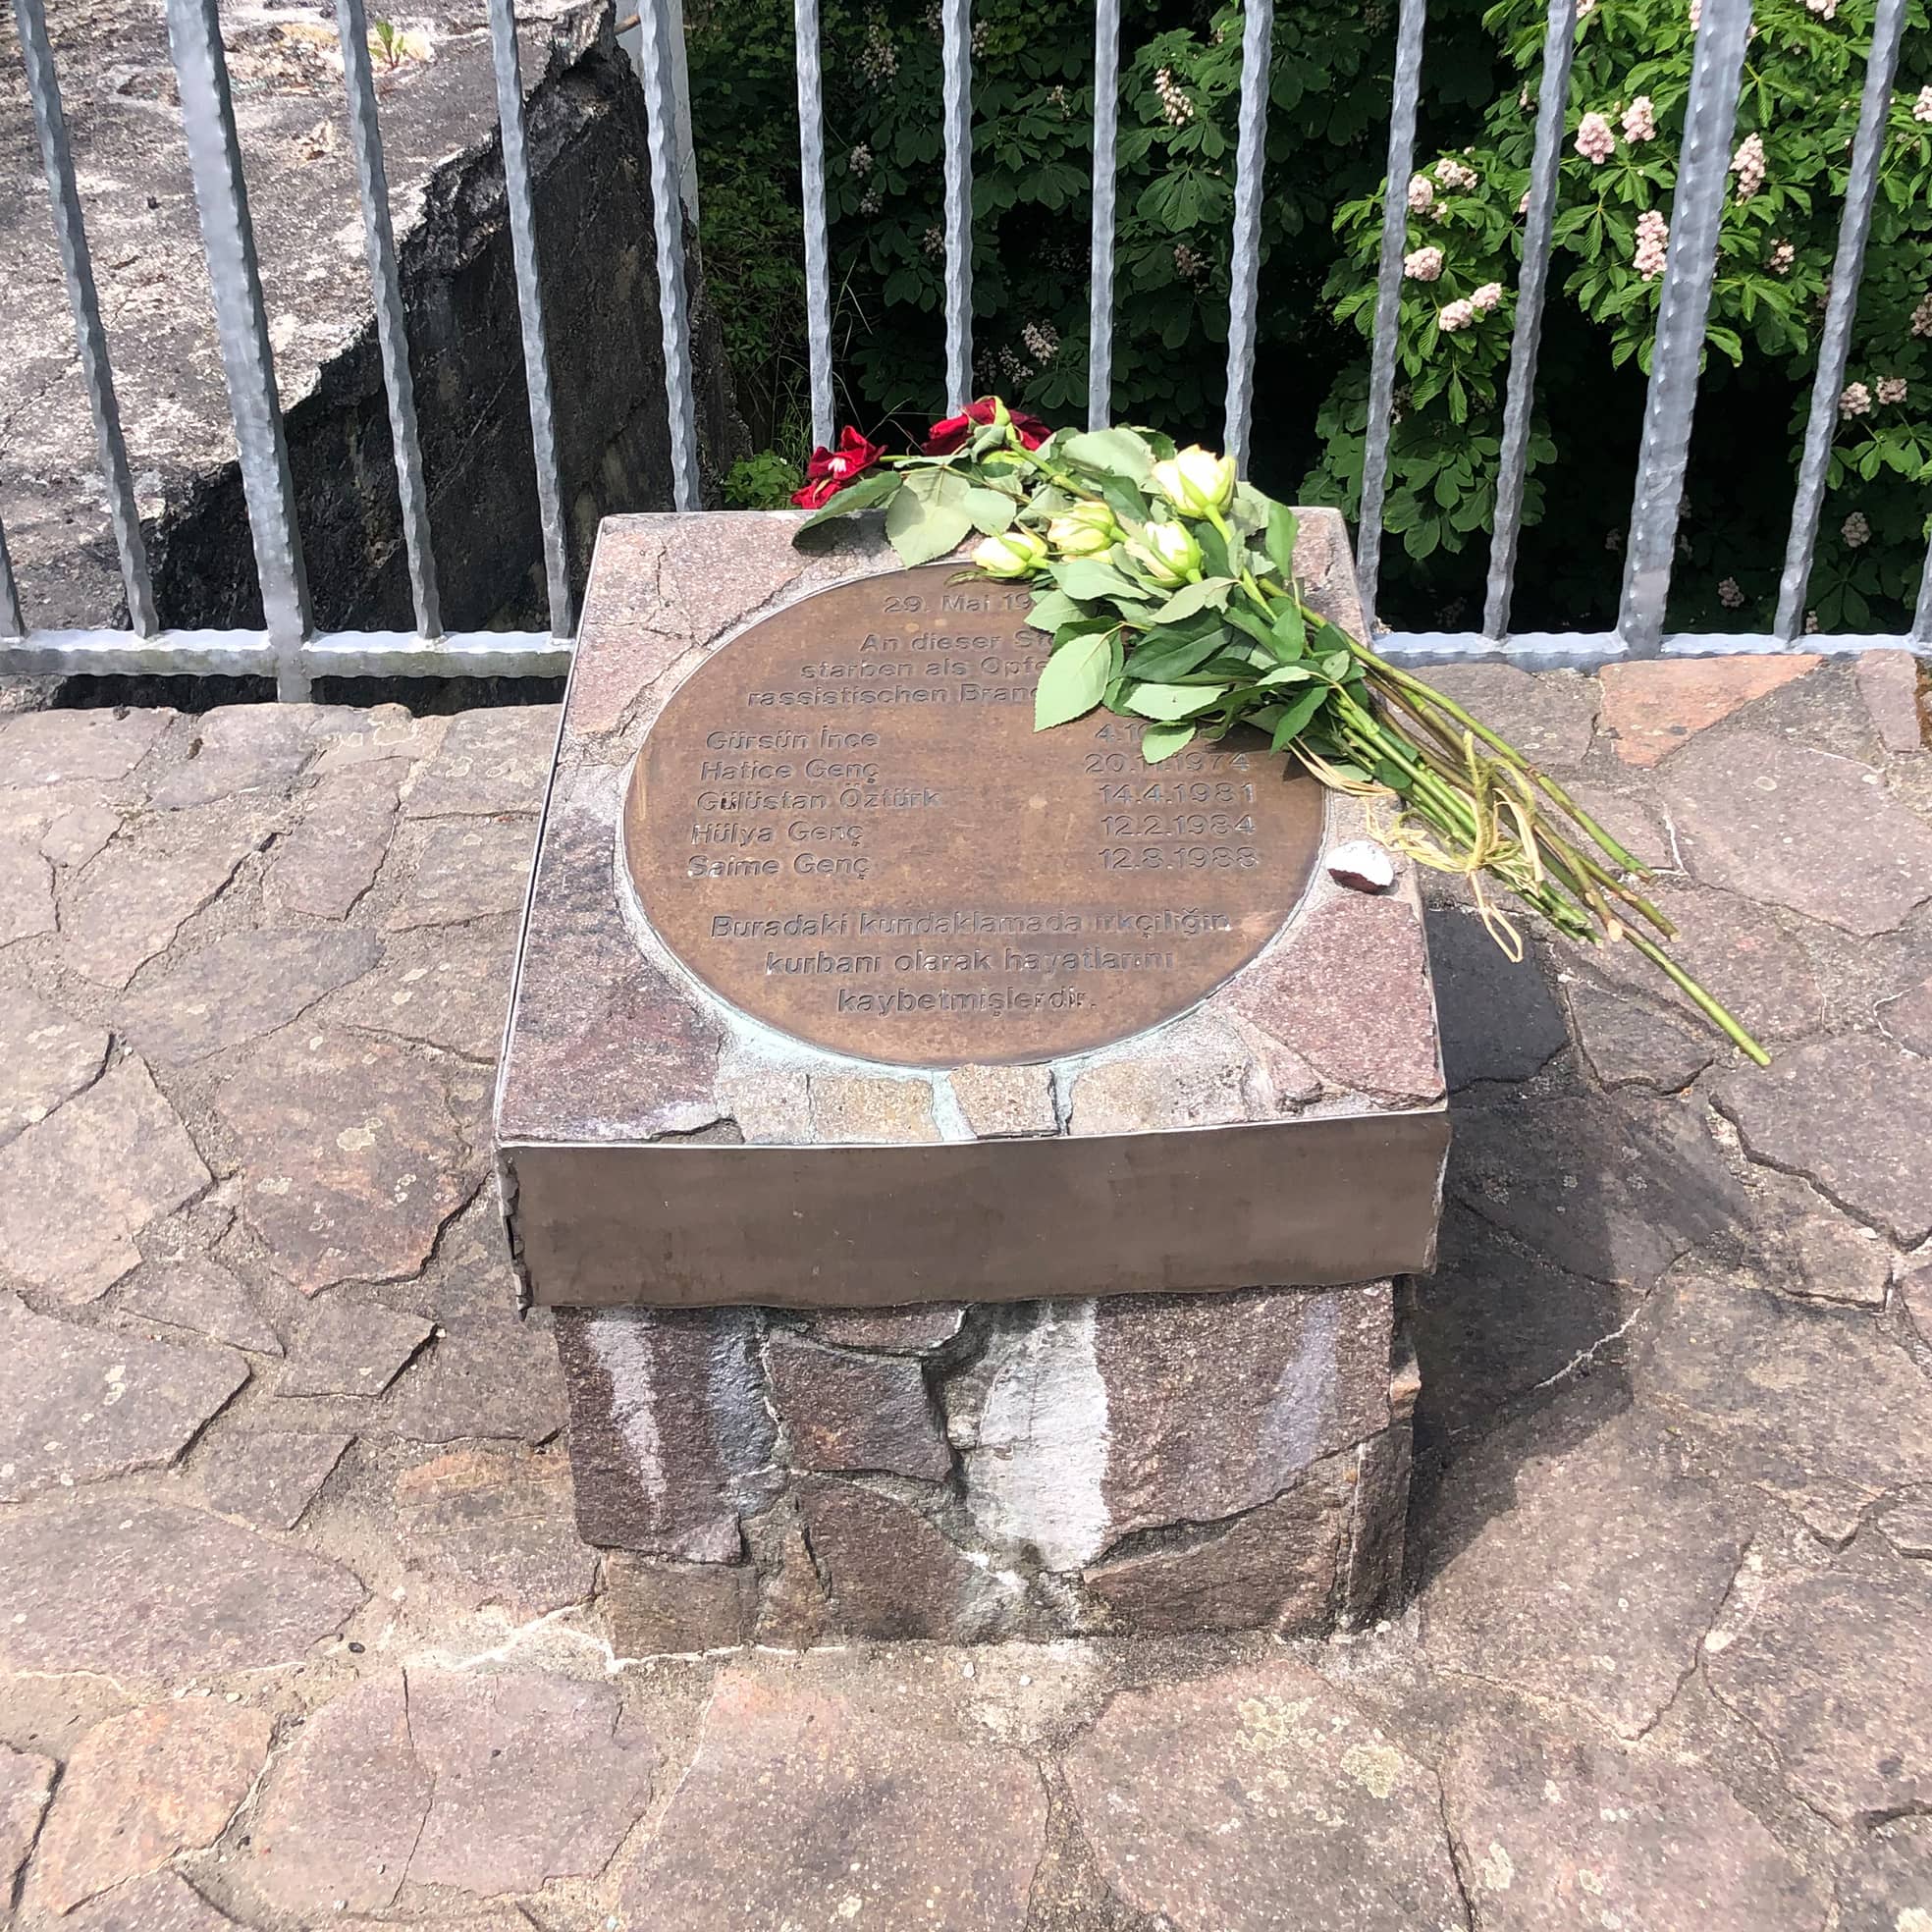 Gedenken in Solingen: Wenige Tage vor dem 30. Jahrestag des Anschlags liegen Rosen auf einer Gedenktafel.